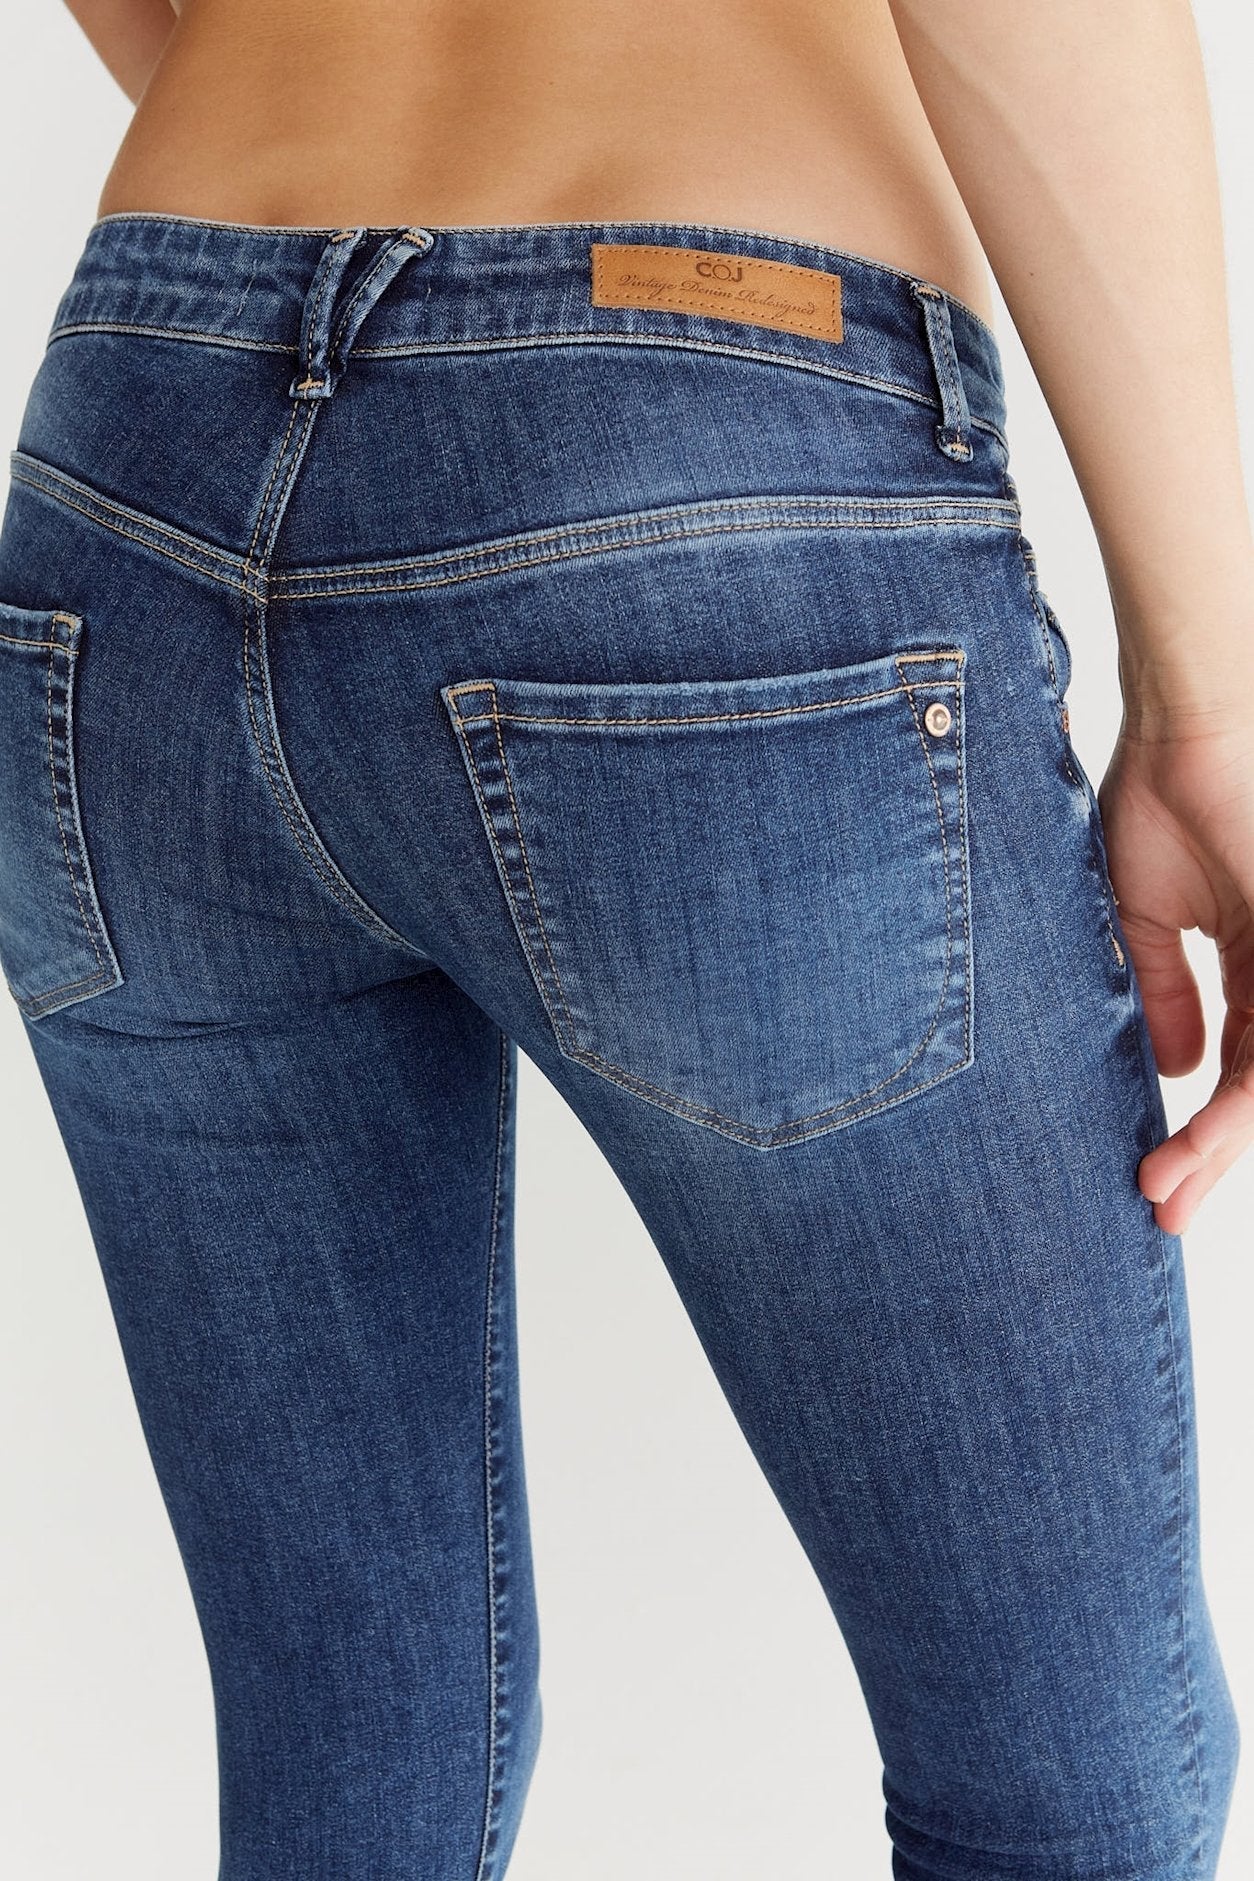 Allissa - Skinny Cropped Jeans - Saphirblau